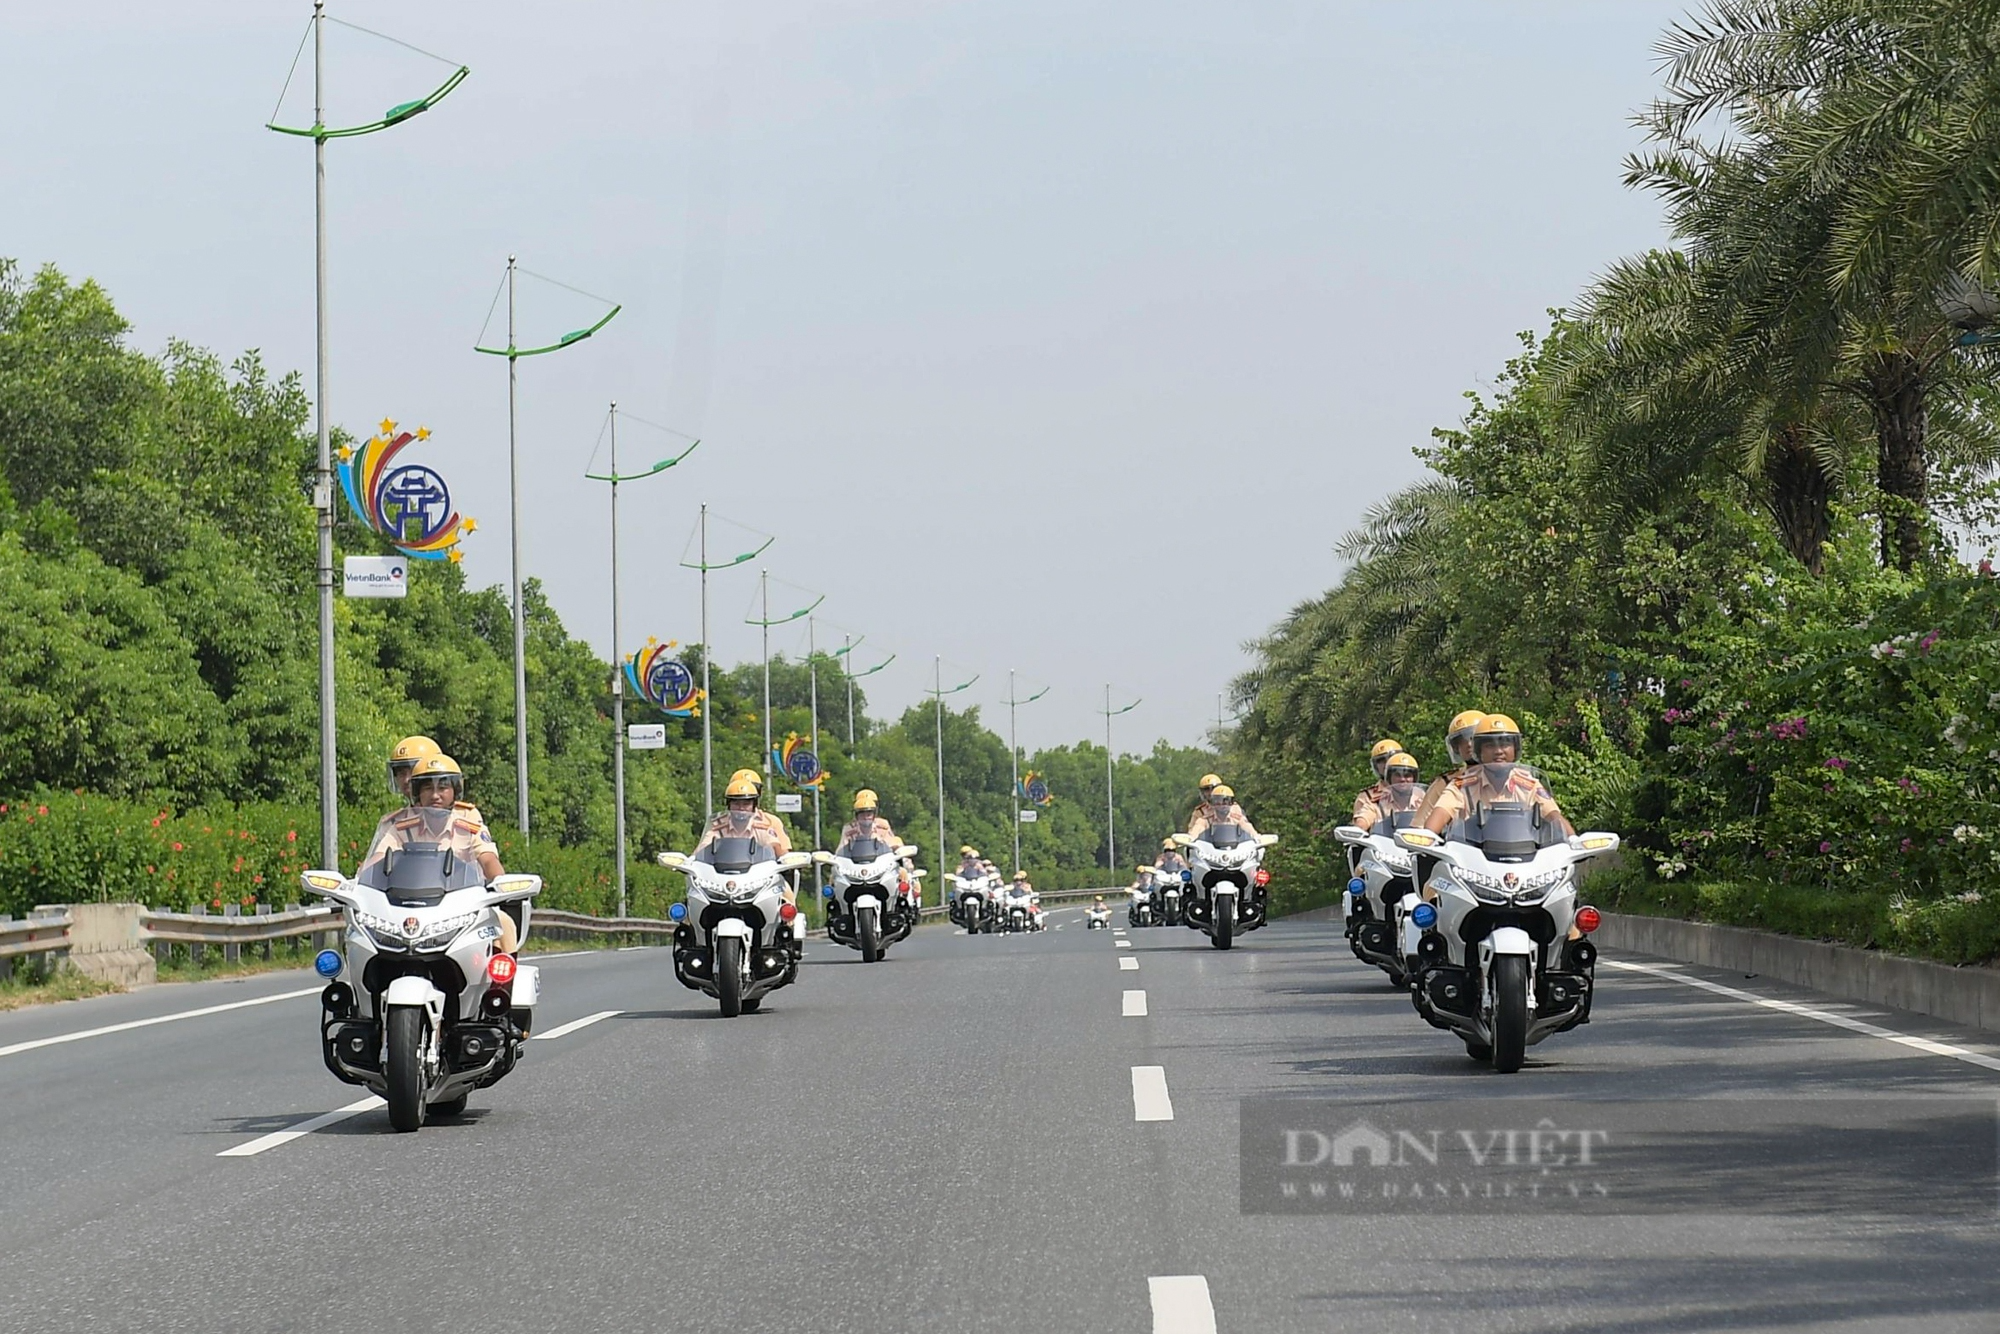 Ngắm dàn siêu xe mô tô tiền tỷ của CSGT diễu hành trên đường phố Hà Nội - Ảnh 9.